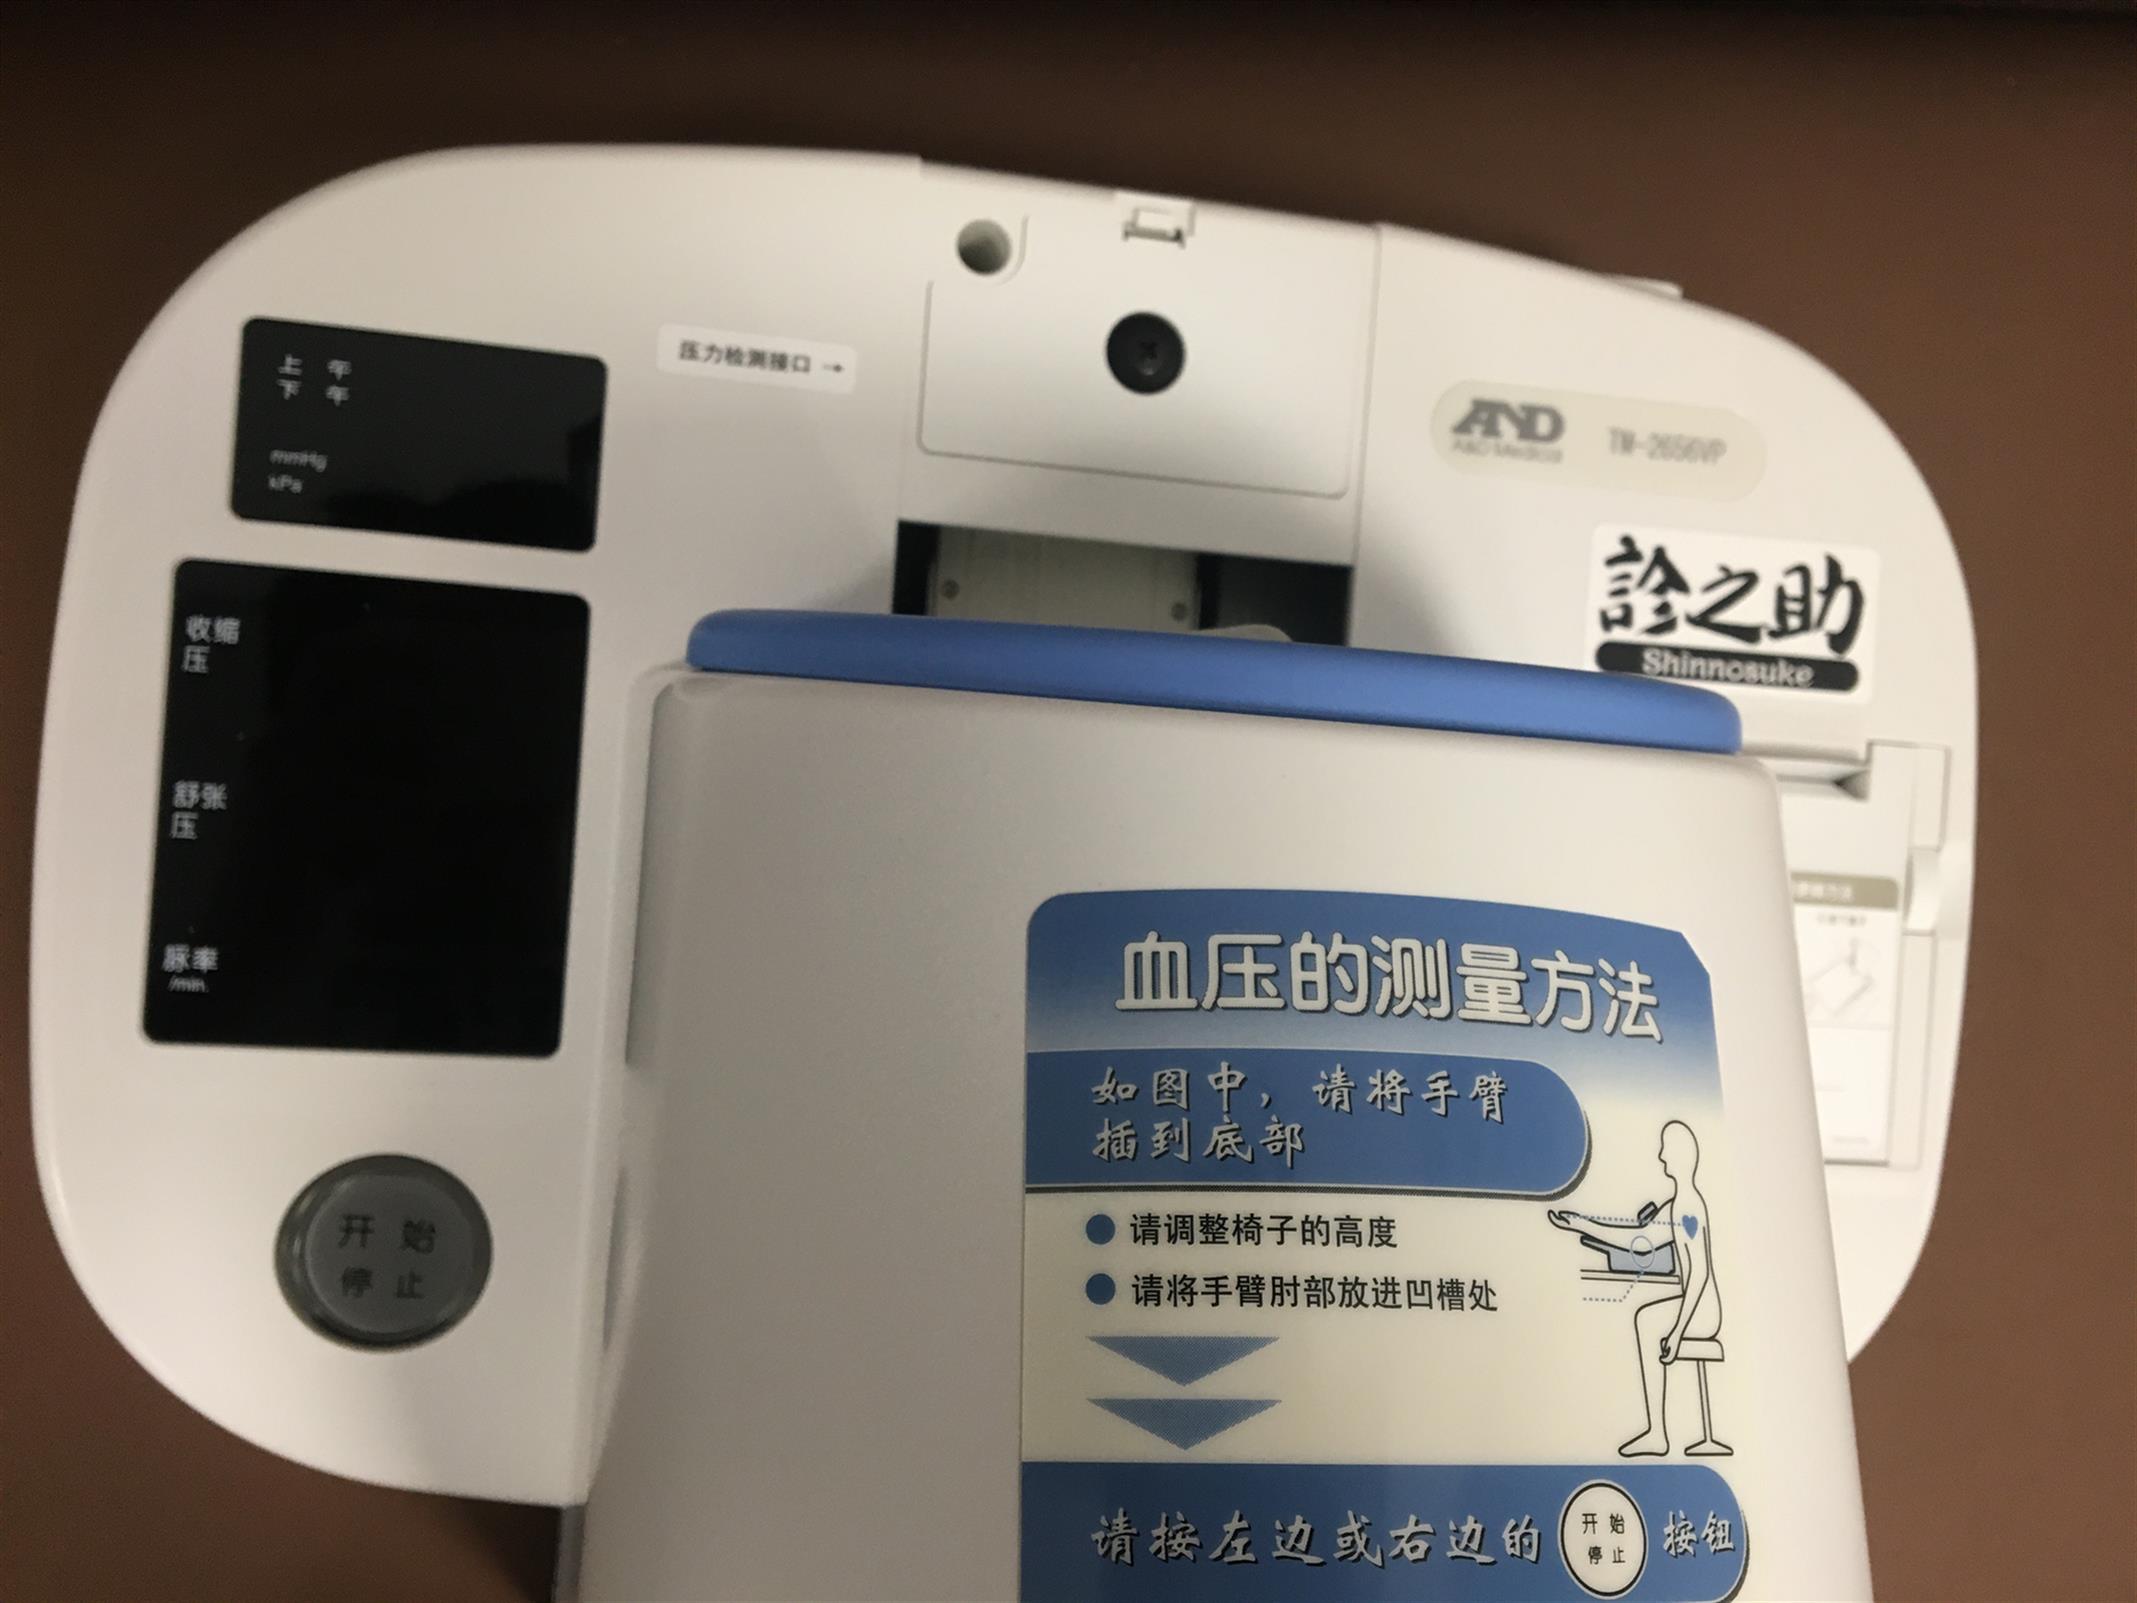 雅安TM-2656VP日本AND全自动血压计